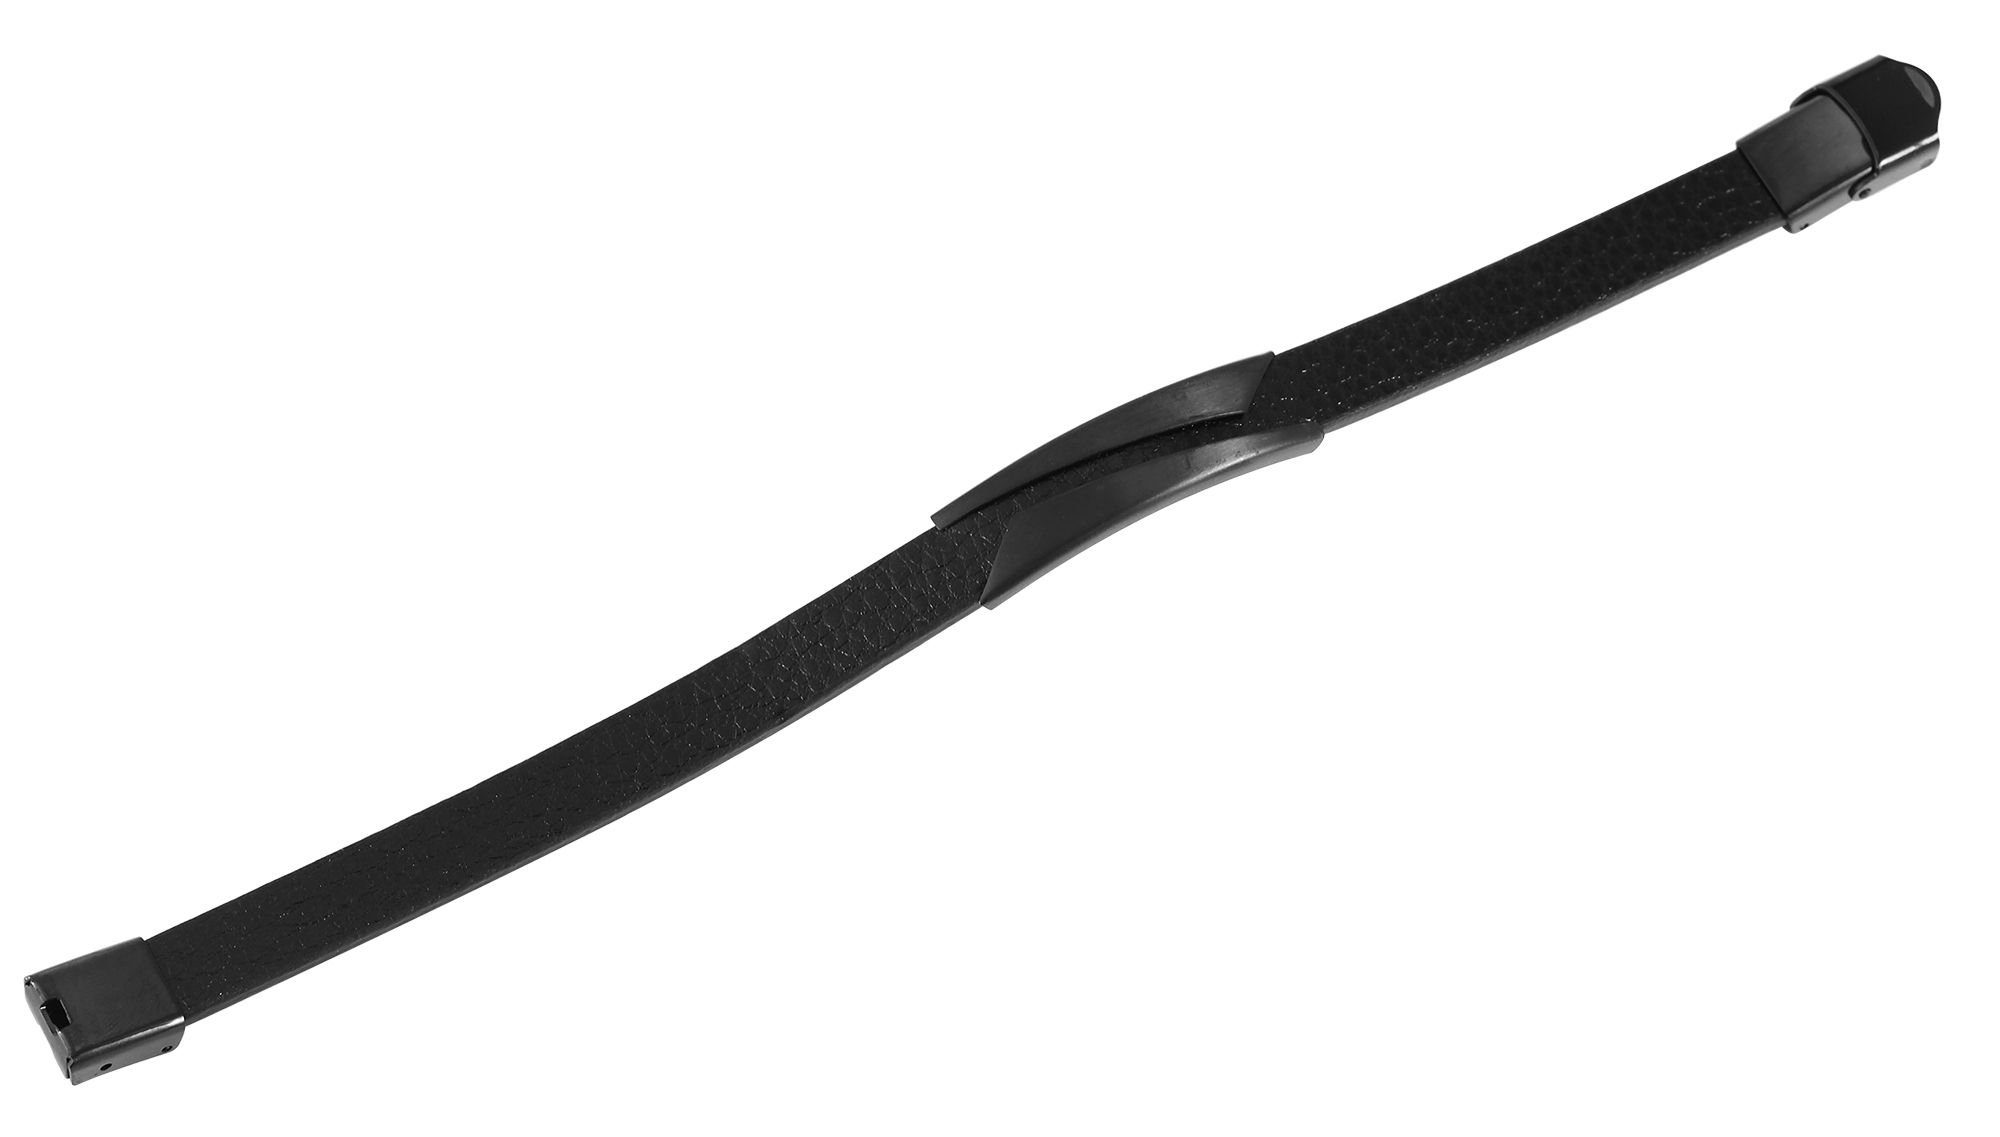 Armband Ledi Echtleder Schwarz AKZENT (einzeln) aus mit Lederarmband Edelstahlelement